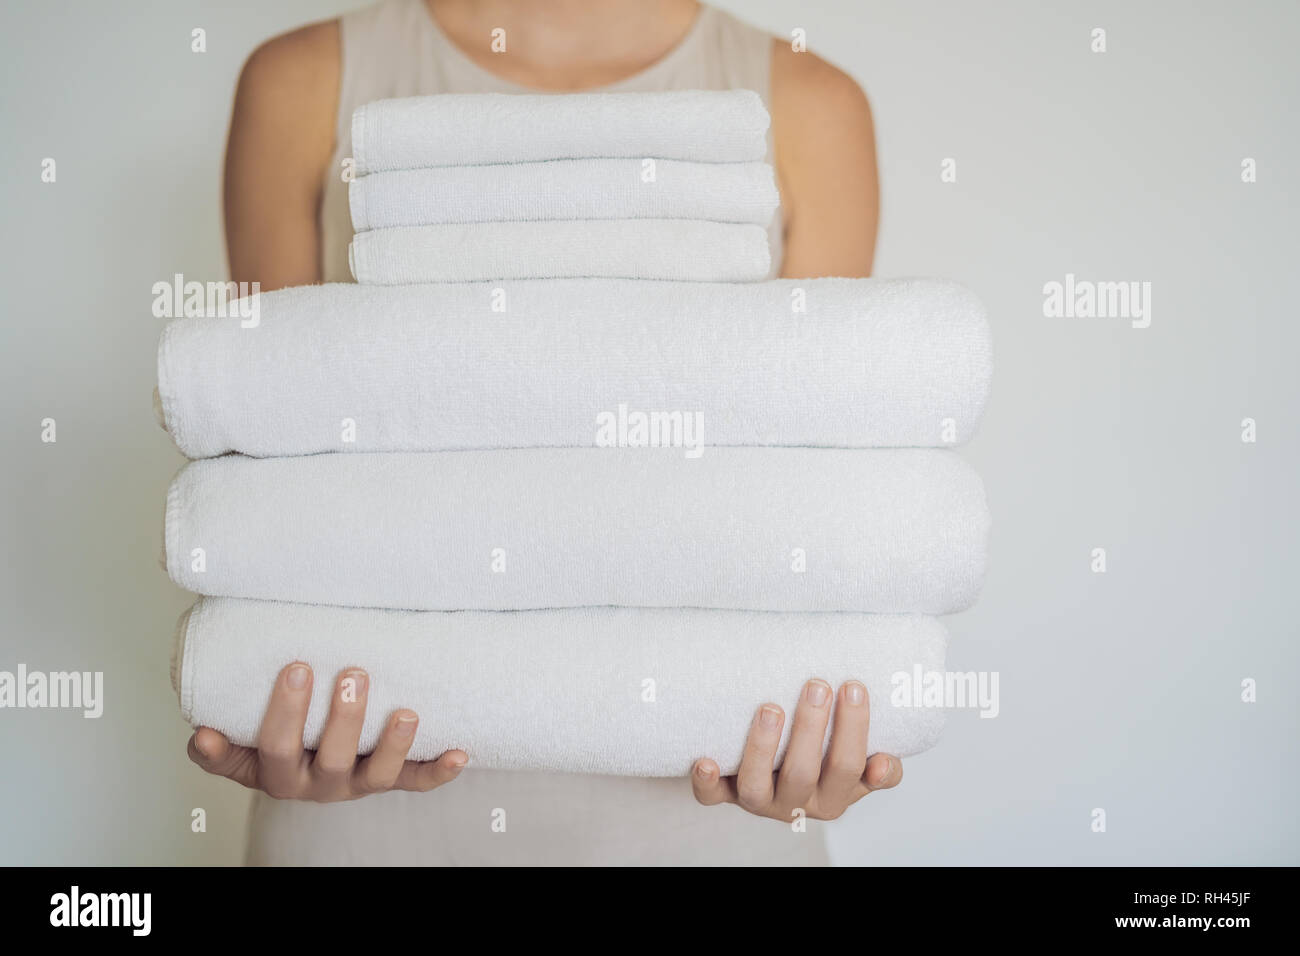 Eine Frau hält ein weißer Bettwäsche. Konzept der Service in Hotels, Wäscherei, Spa Stockfoto